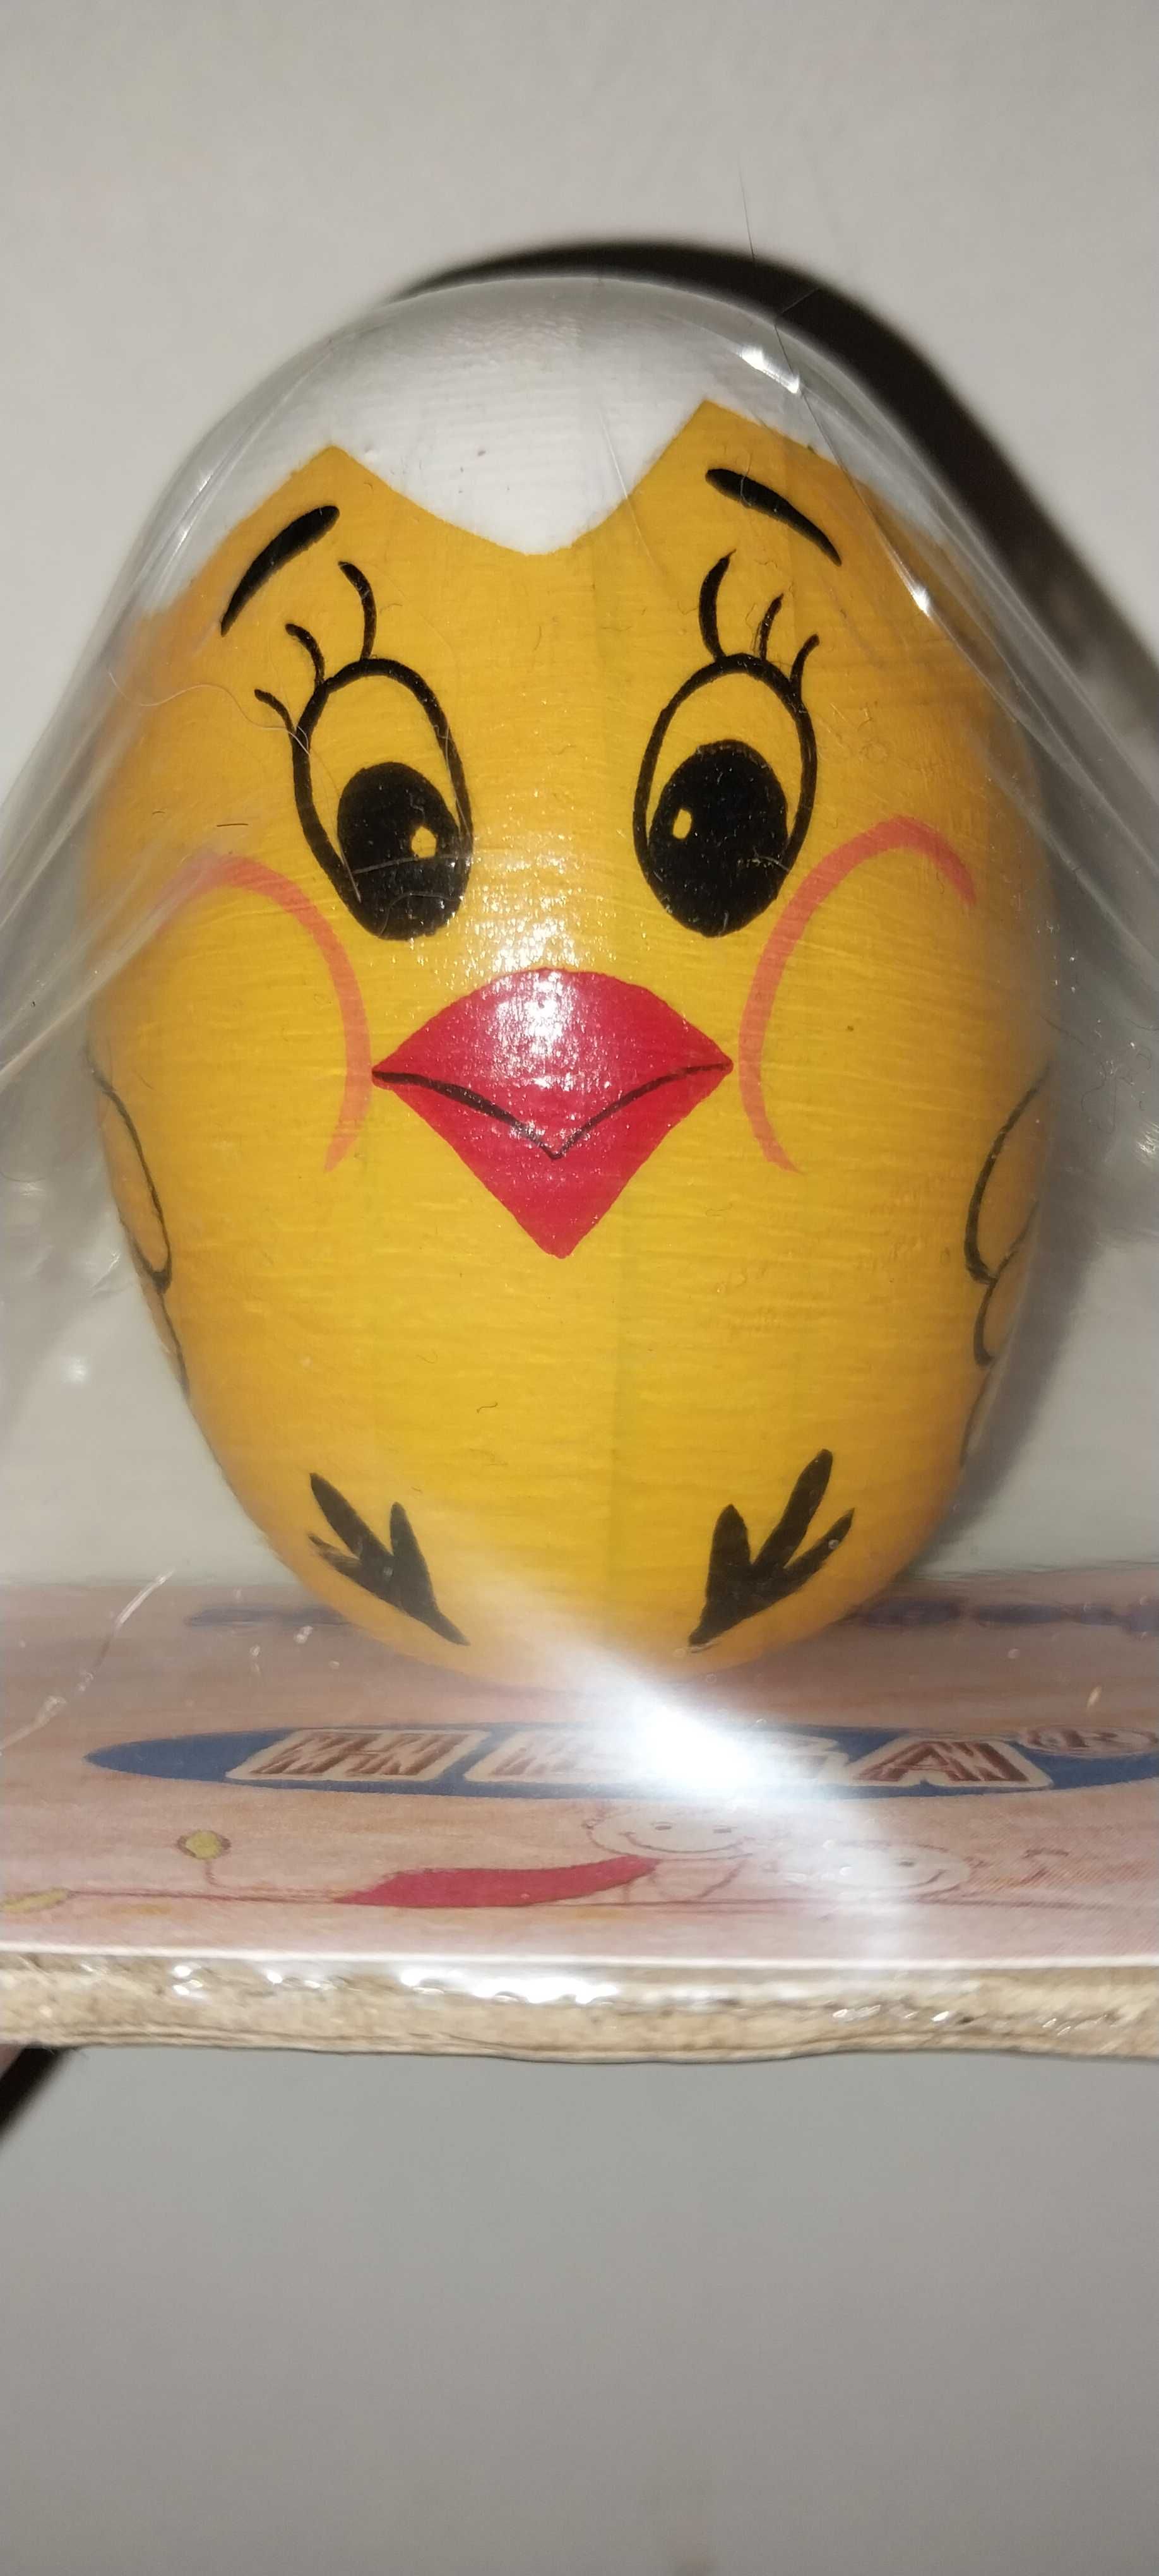 Дерев'яне яйце у вигляді жовтенького курчати